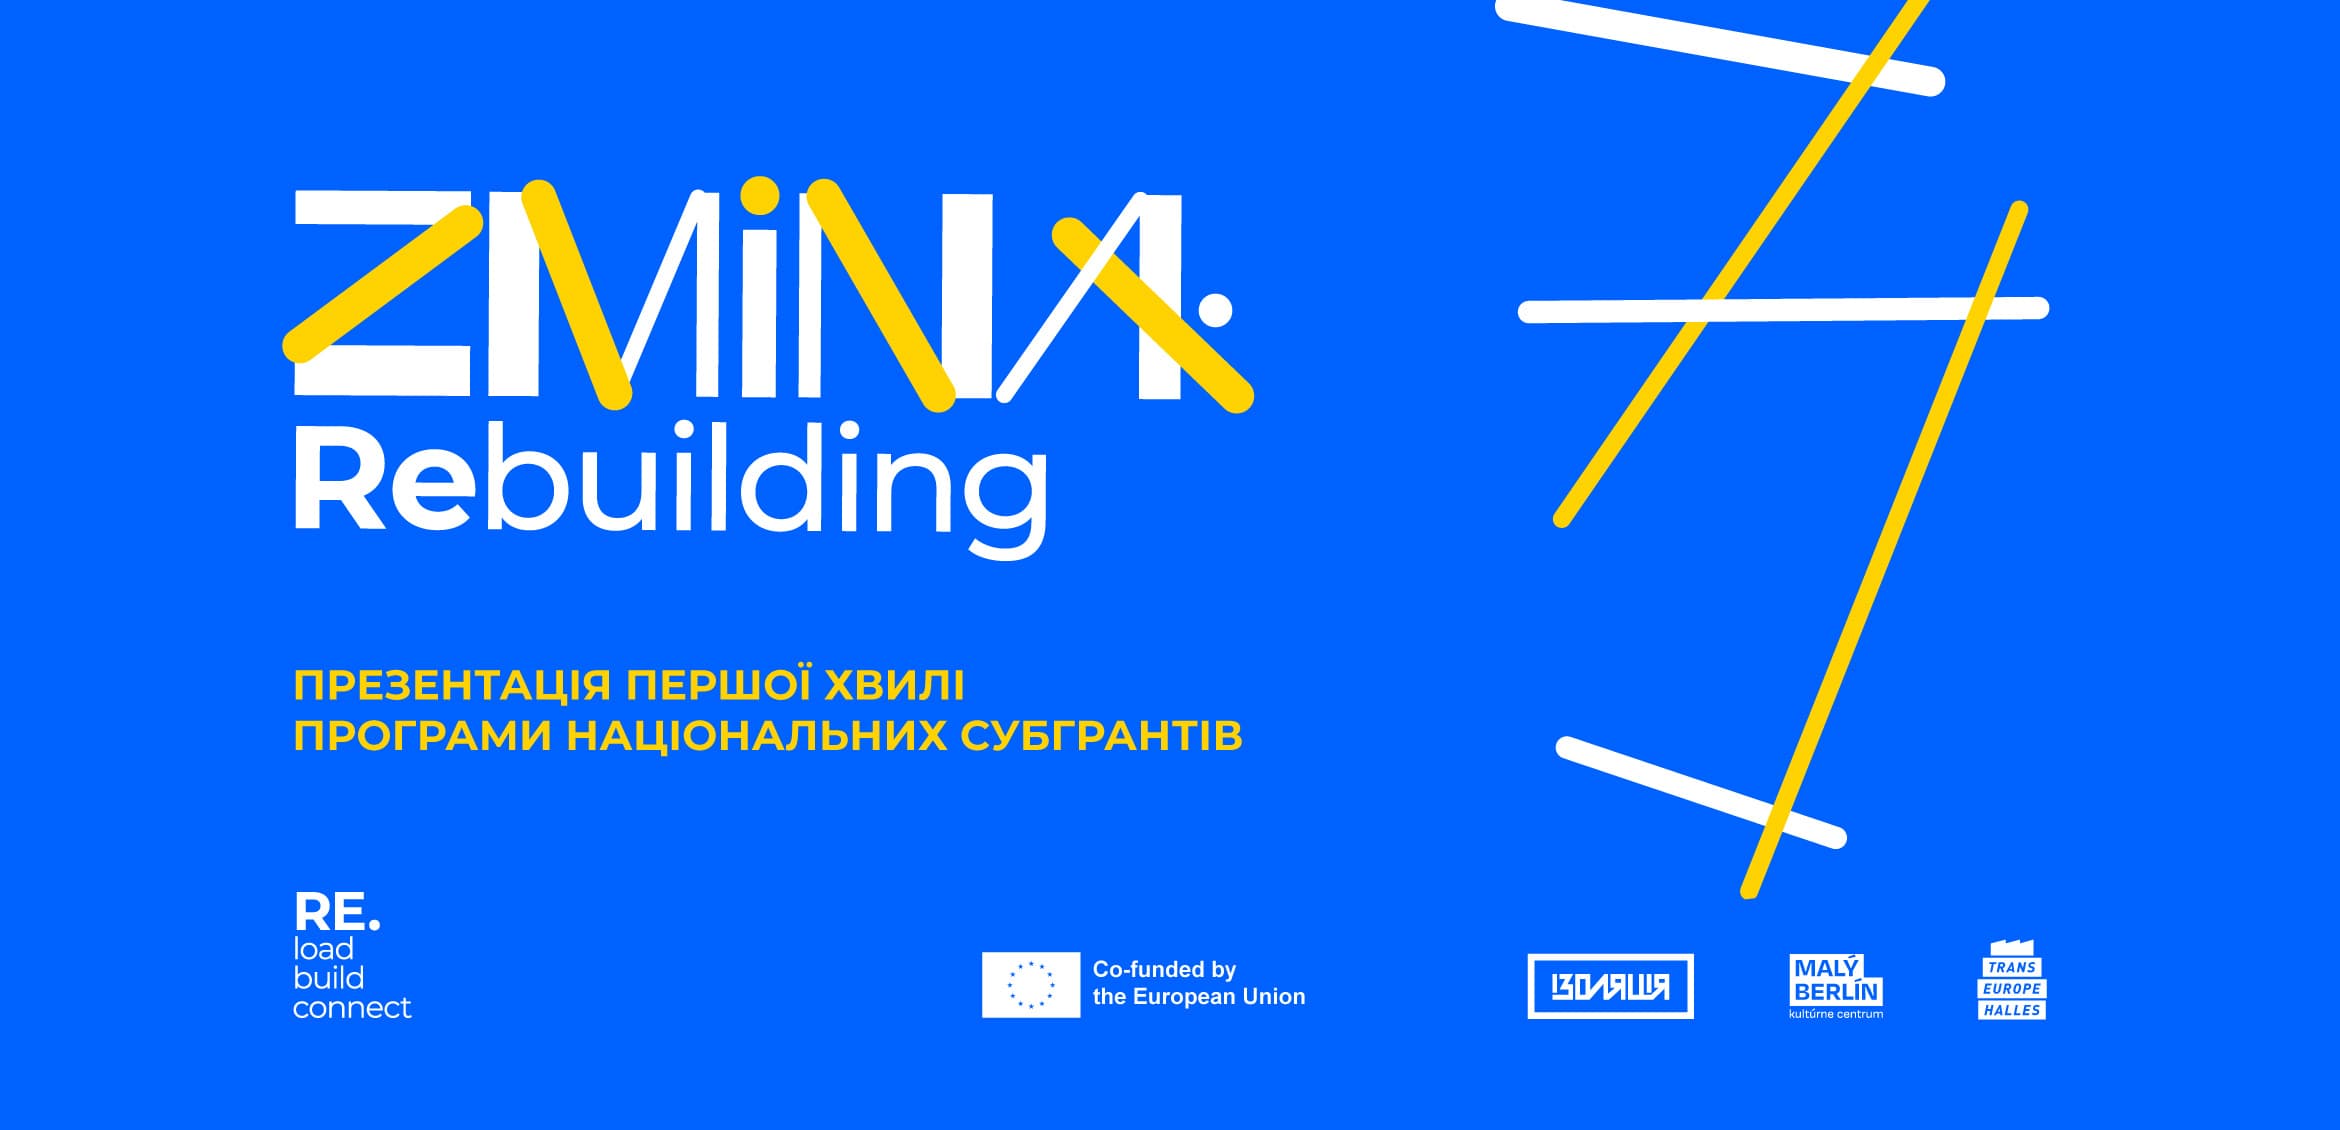 Презентація першої хвиля національних субгрантів ZMINA: Rebuilding